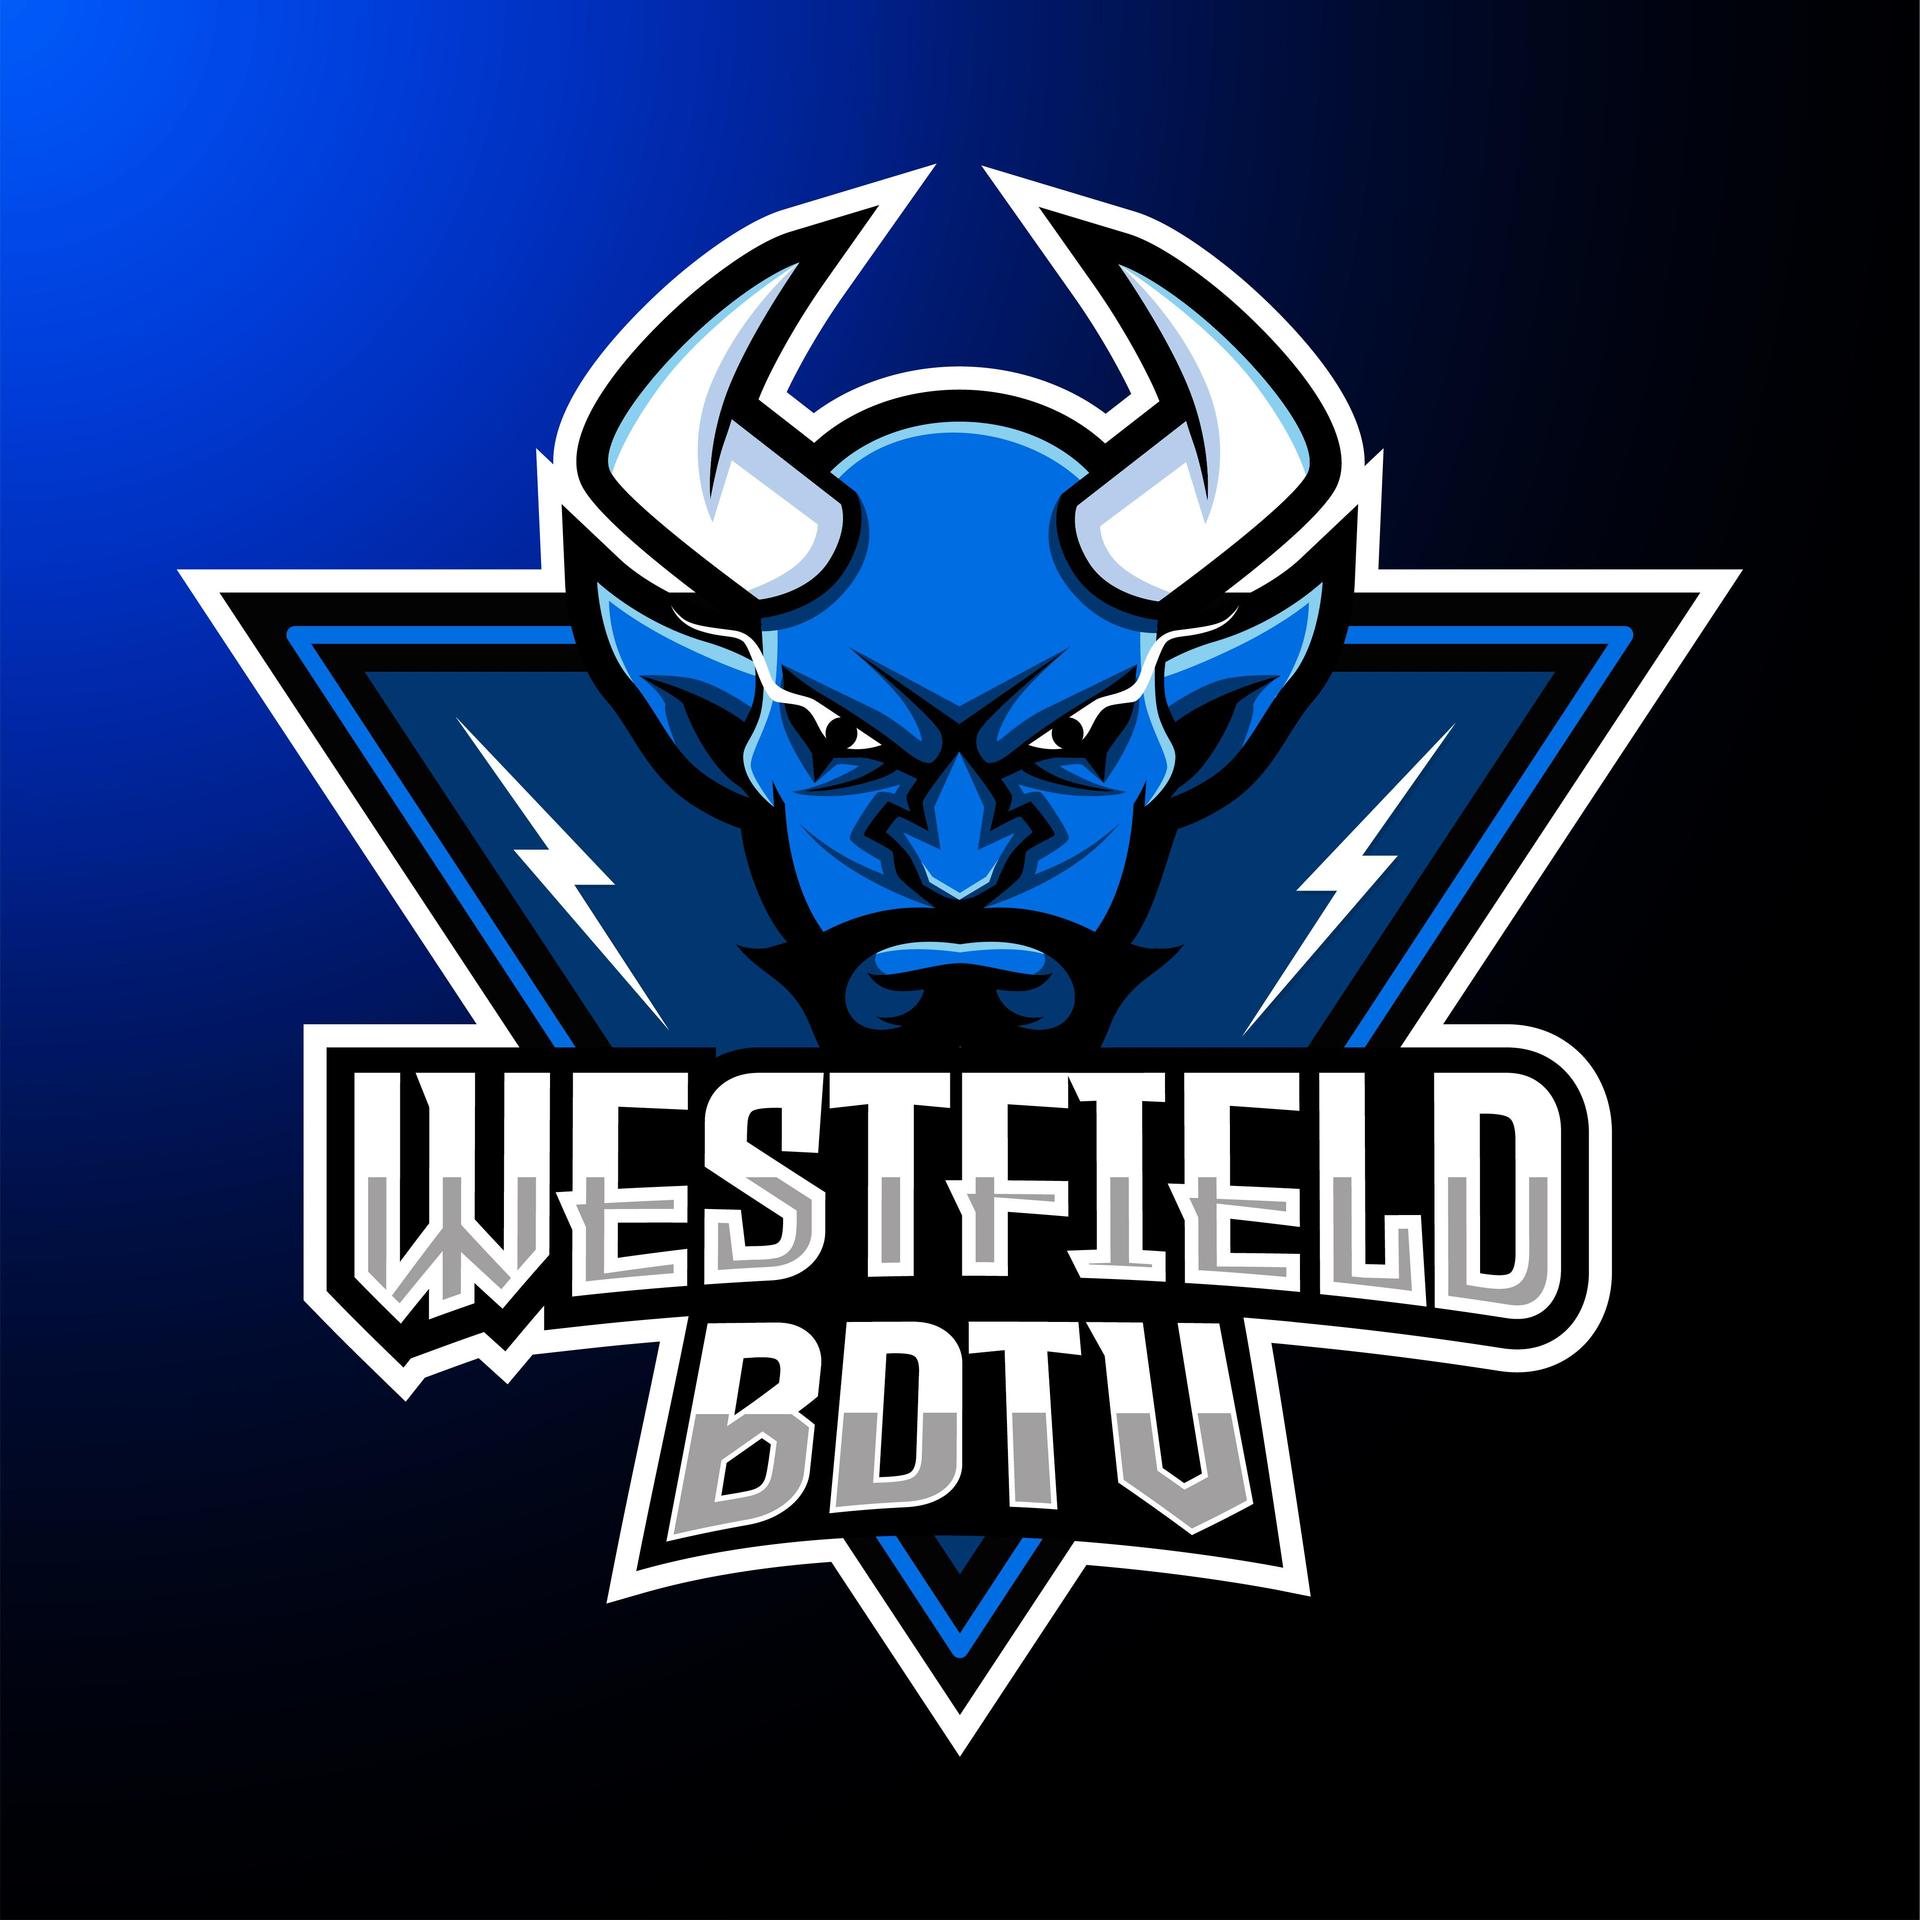 Westfield BDTV